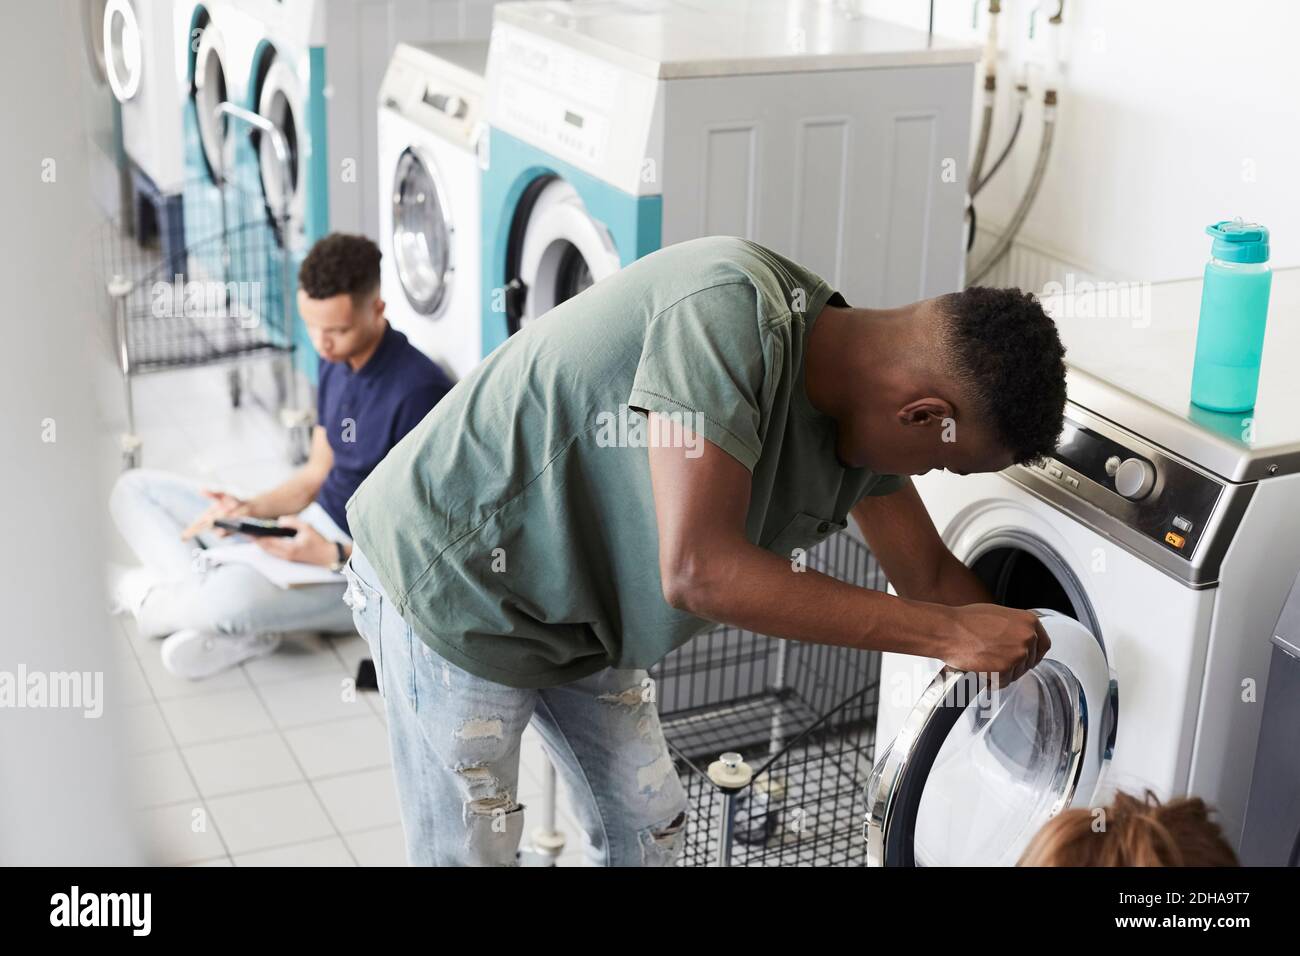 Man using washing machine while university student studying at laundromat Stock Photo